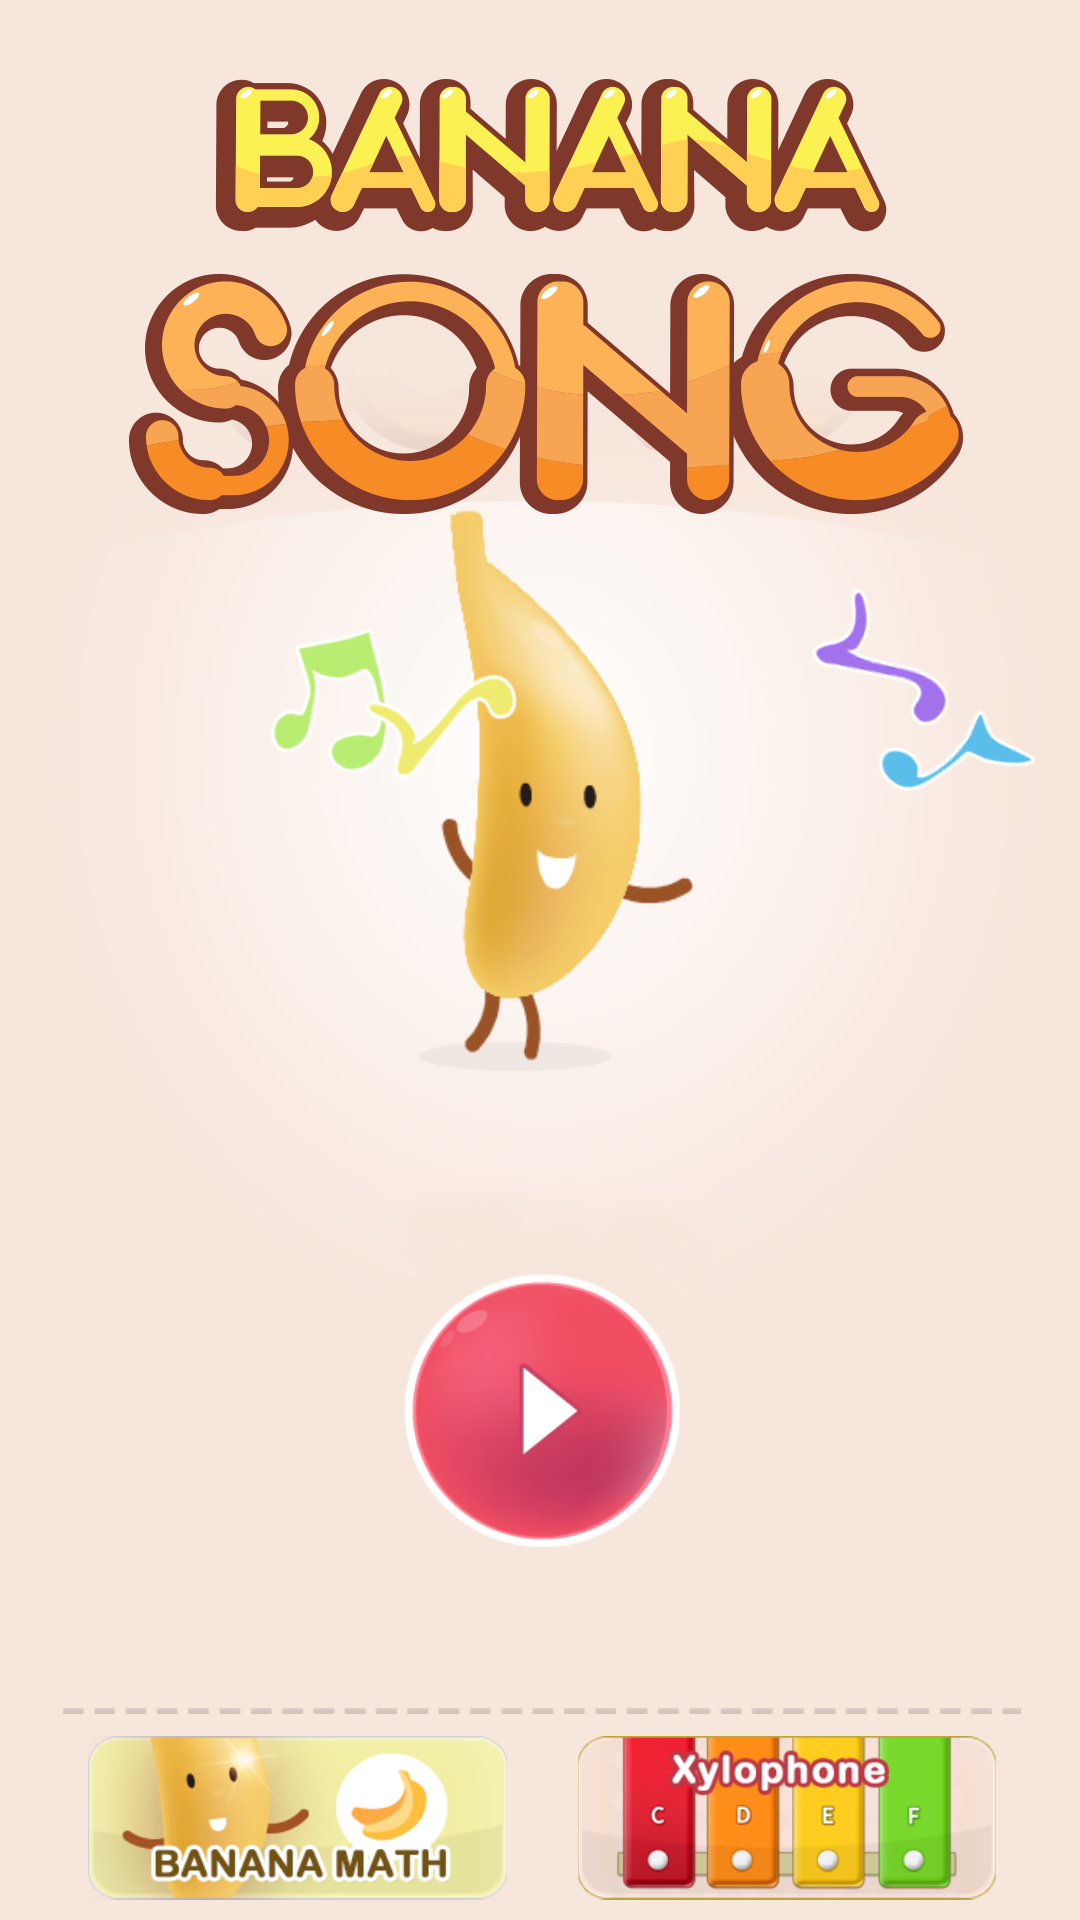 Screenshot 1 of 아이들을 위한 바나나 송: 음악 놀이 1.0.0